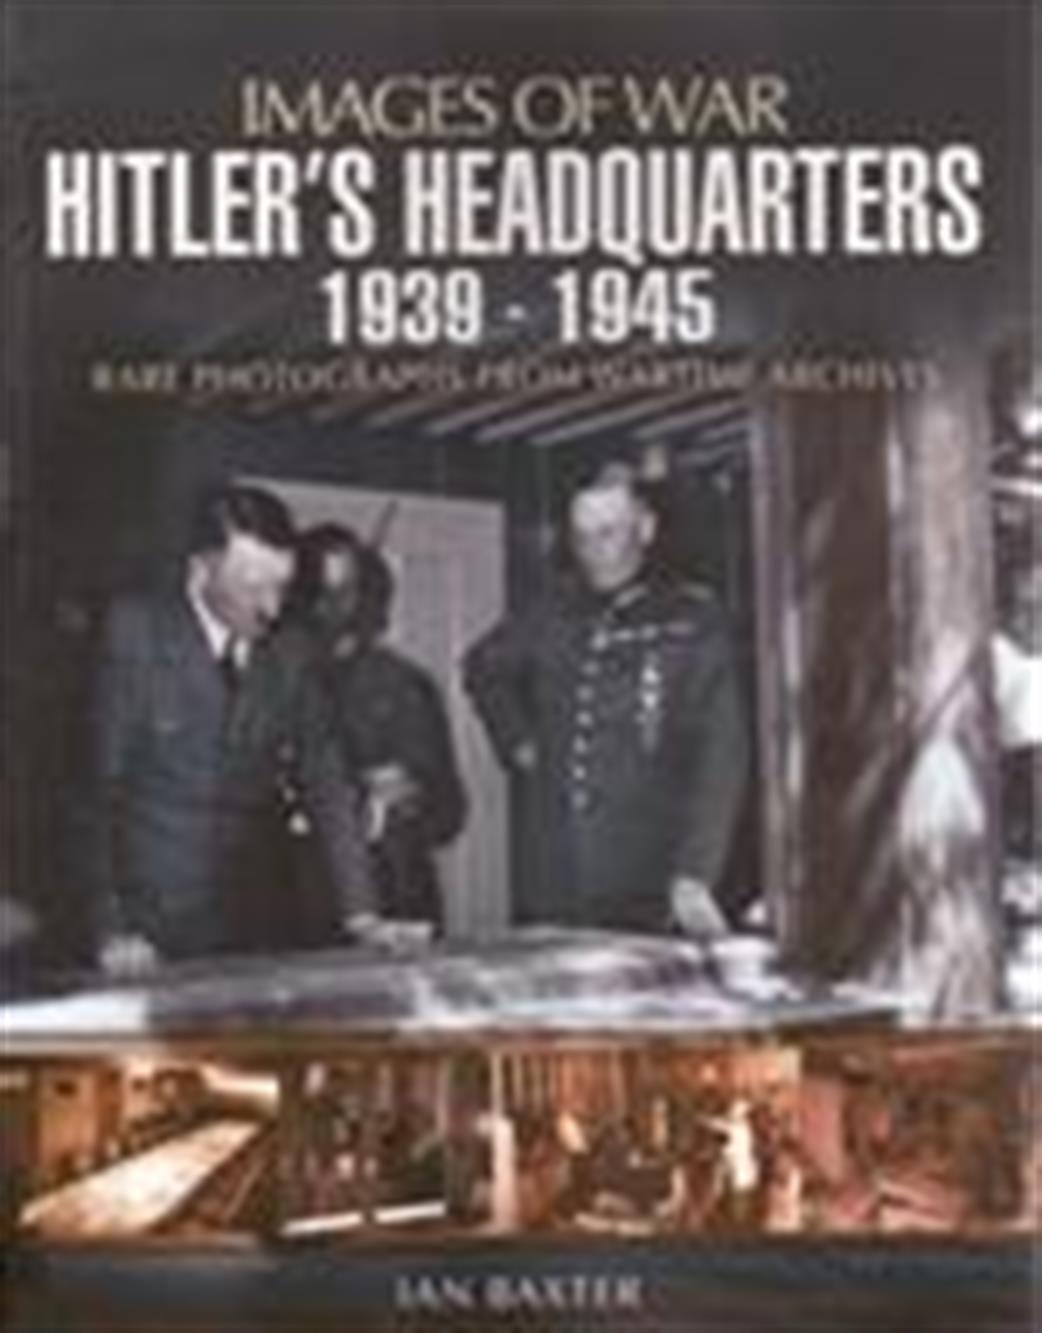 Pen & Sword 9781848846289 Images of War Hitler's Headquaters 1939-1945